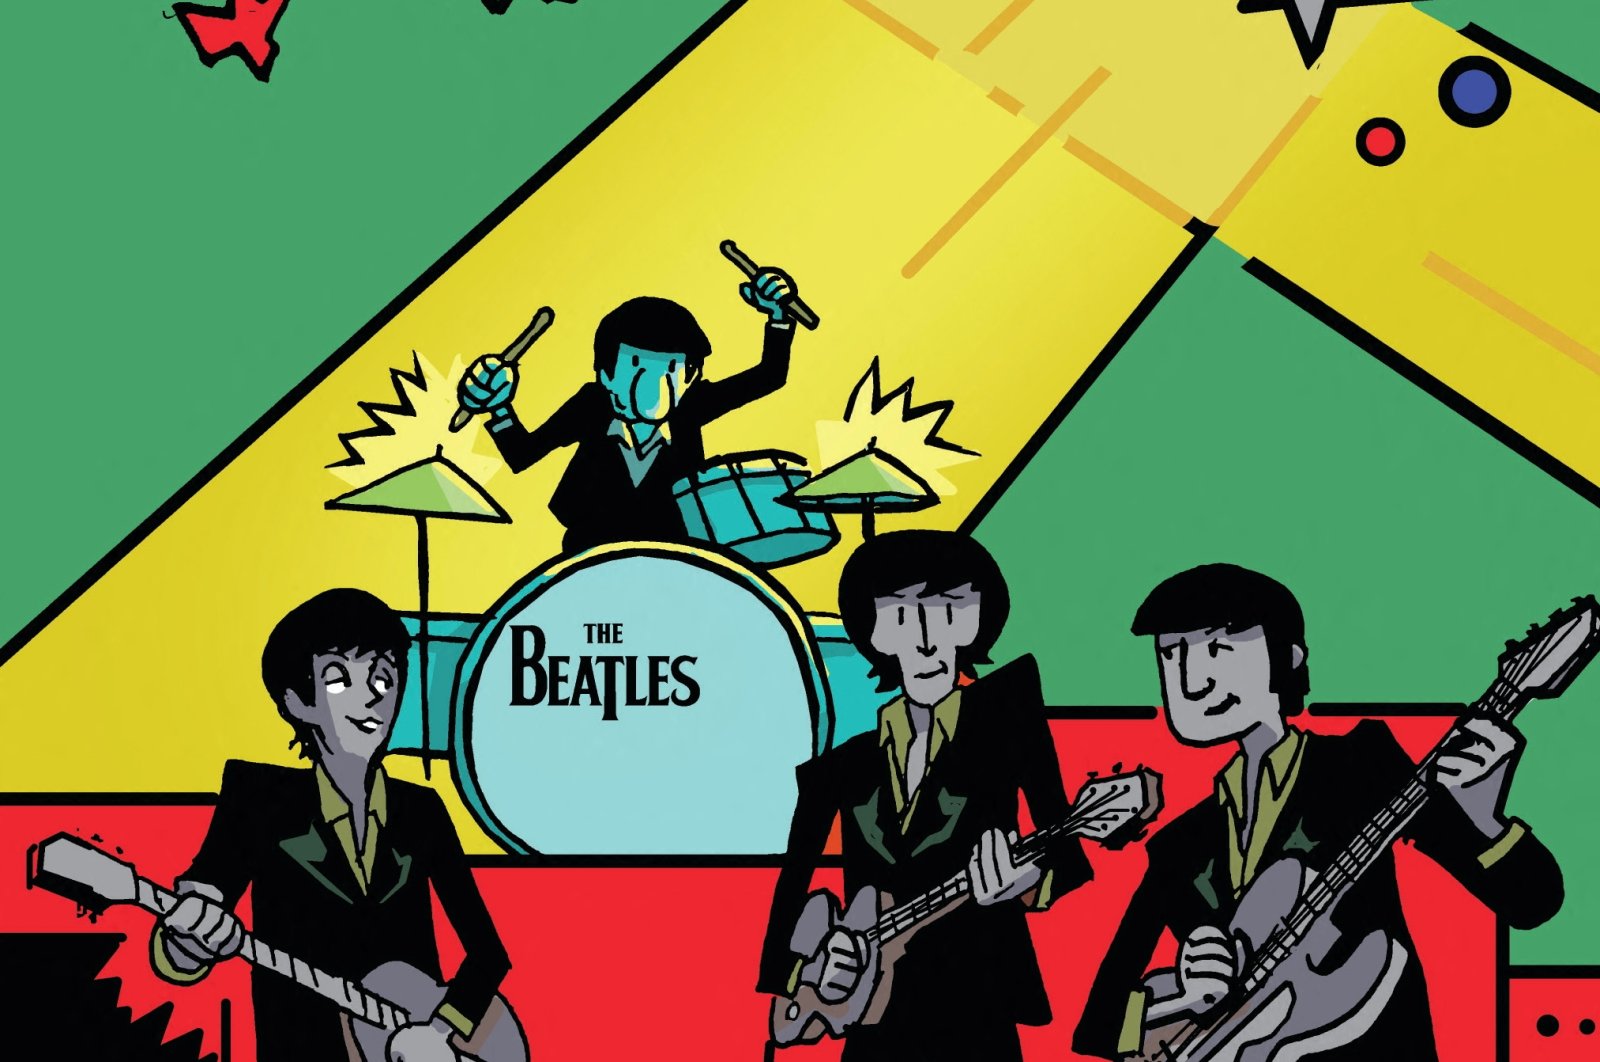 Buku komik baru merayakan kehidupan drummer Beatles Ringo Starr